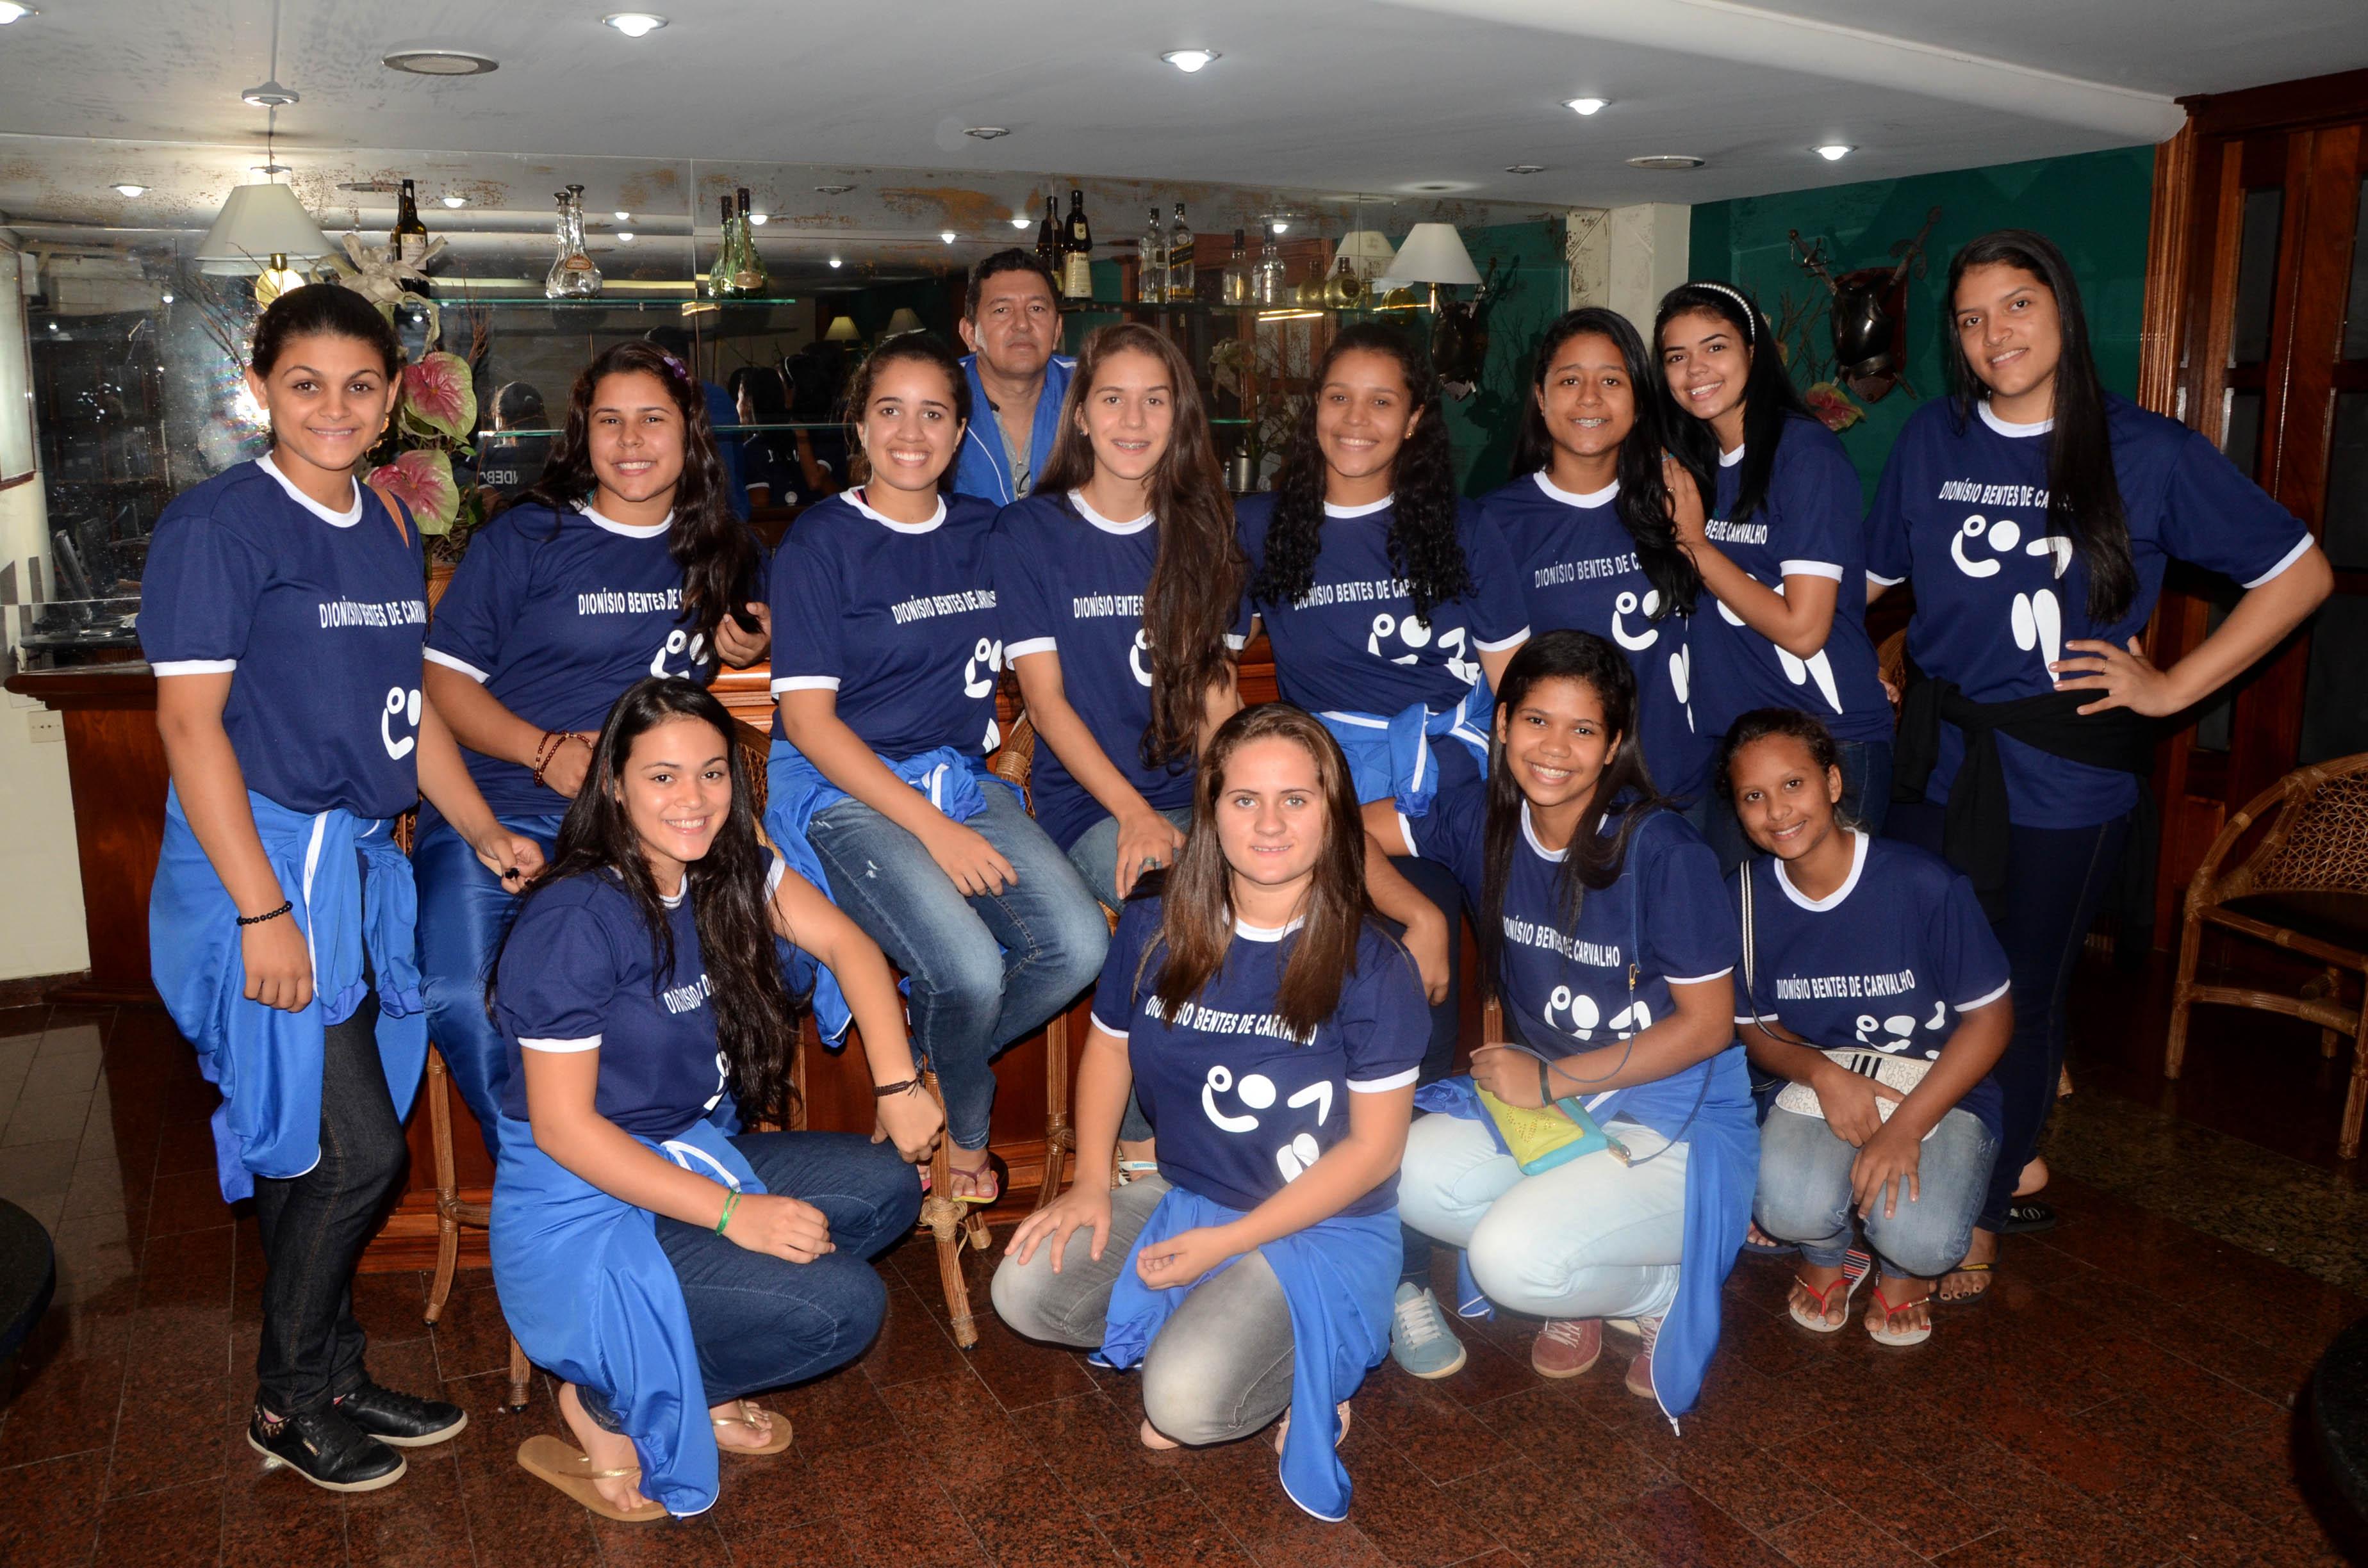 Campeonato Brasileiro Feminino 2015 - Xadrez Total